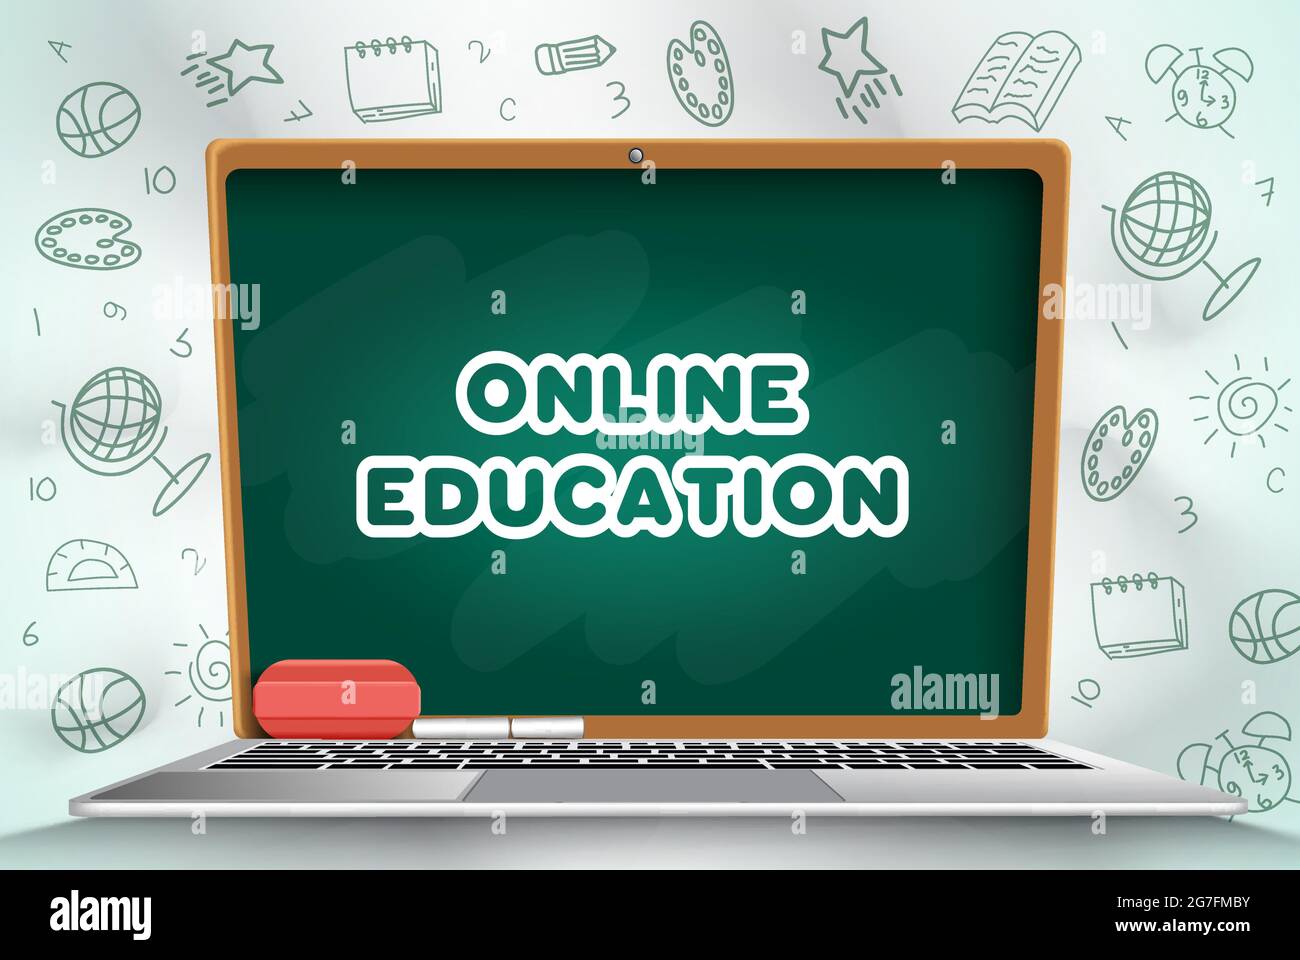 Online-Bildung Vektor-Design. Online-Bildung Text in Tafel Laptop-Bildschirm-Element mit Doodle Art Hintergrund für digitale Geräte E-Learning. Stock Vektor